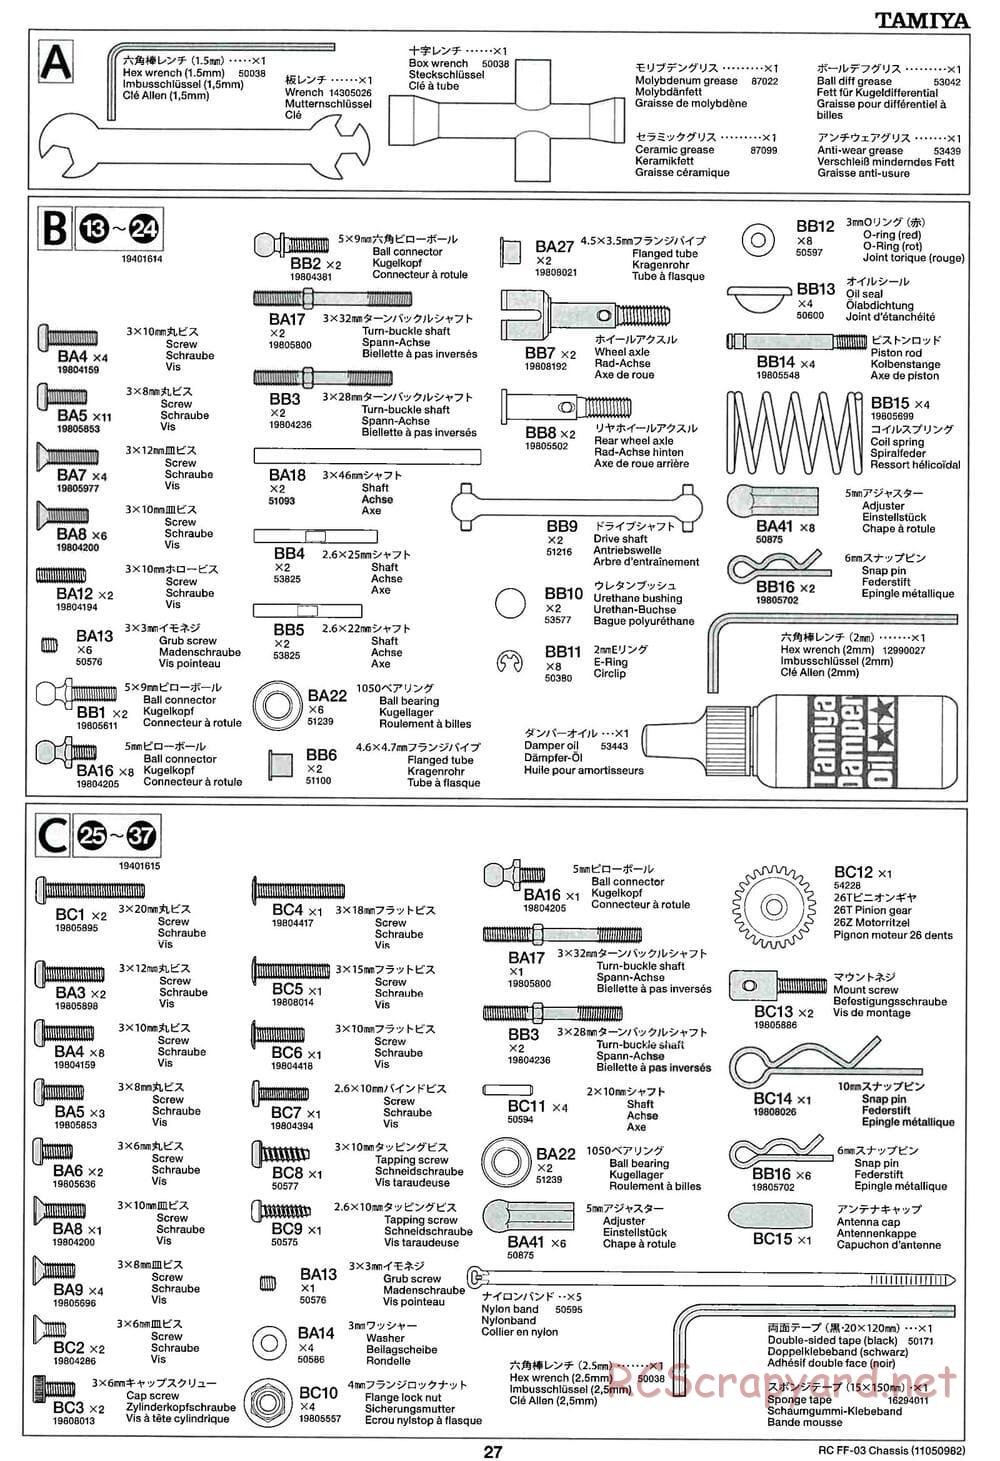 Tamiya - Castrol Honda Civic VTi - FF-03 Chassis - Manual - Page 27